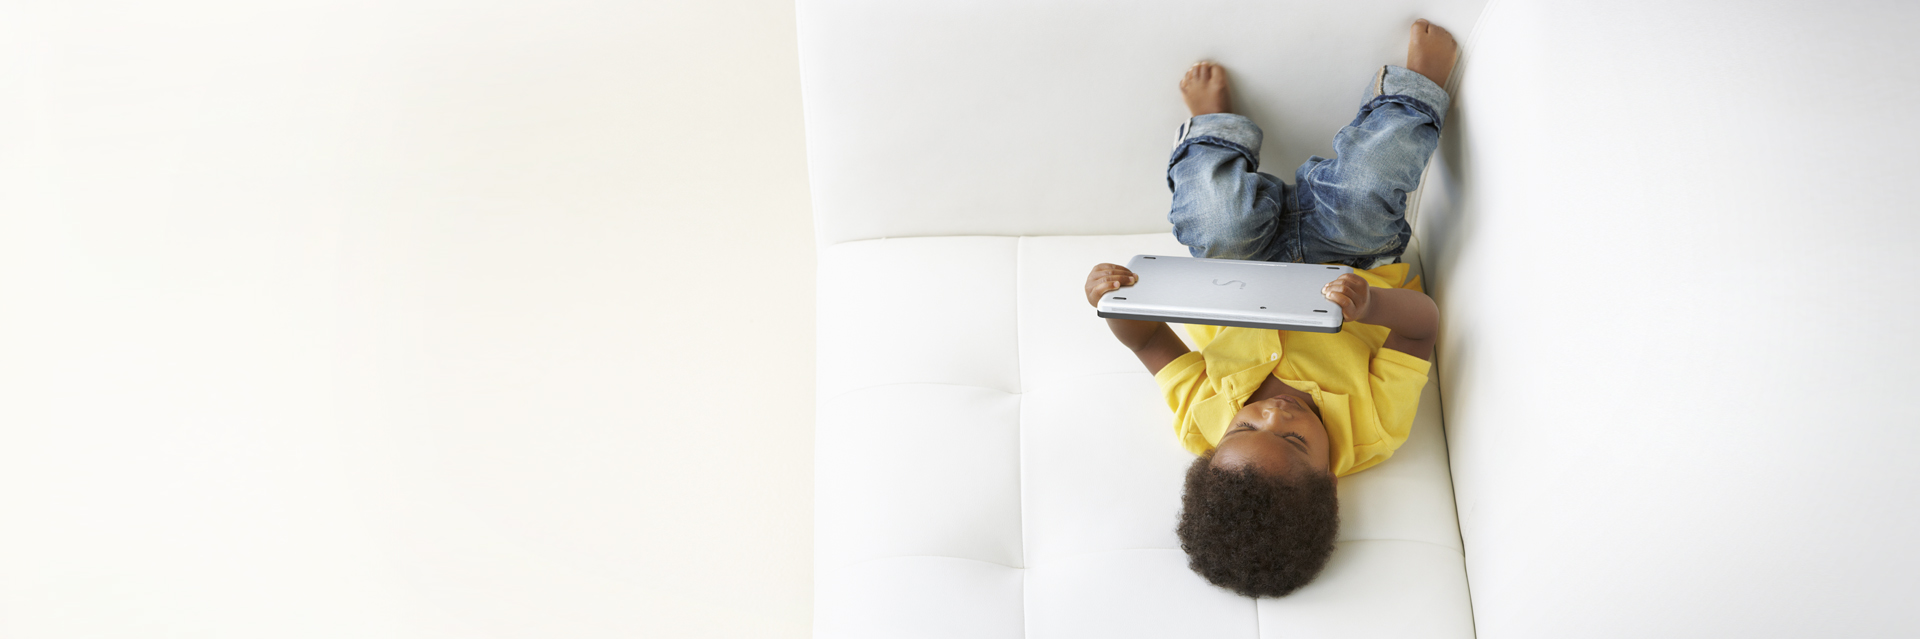 La photo représente un enfant allongé sur un canapé en train de regarder la tablette.